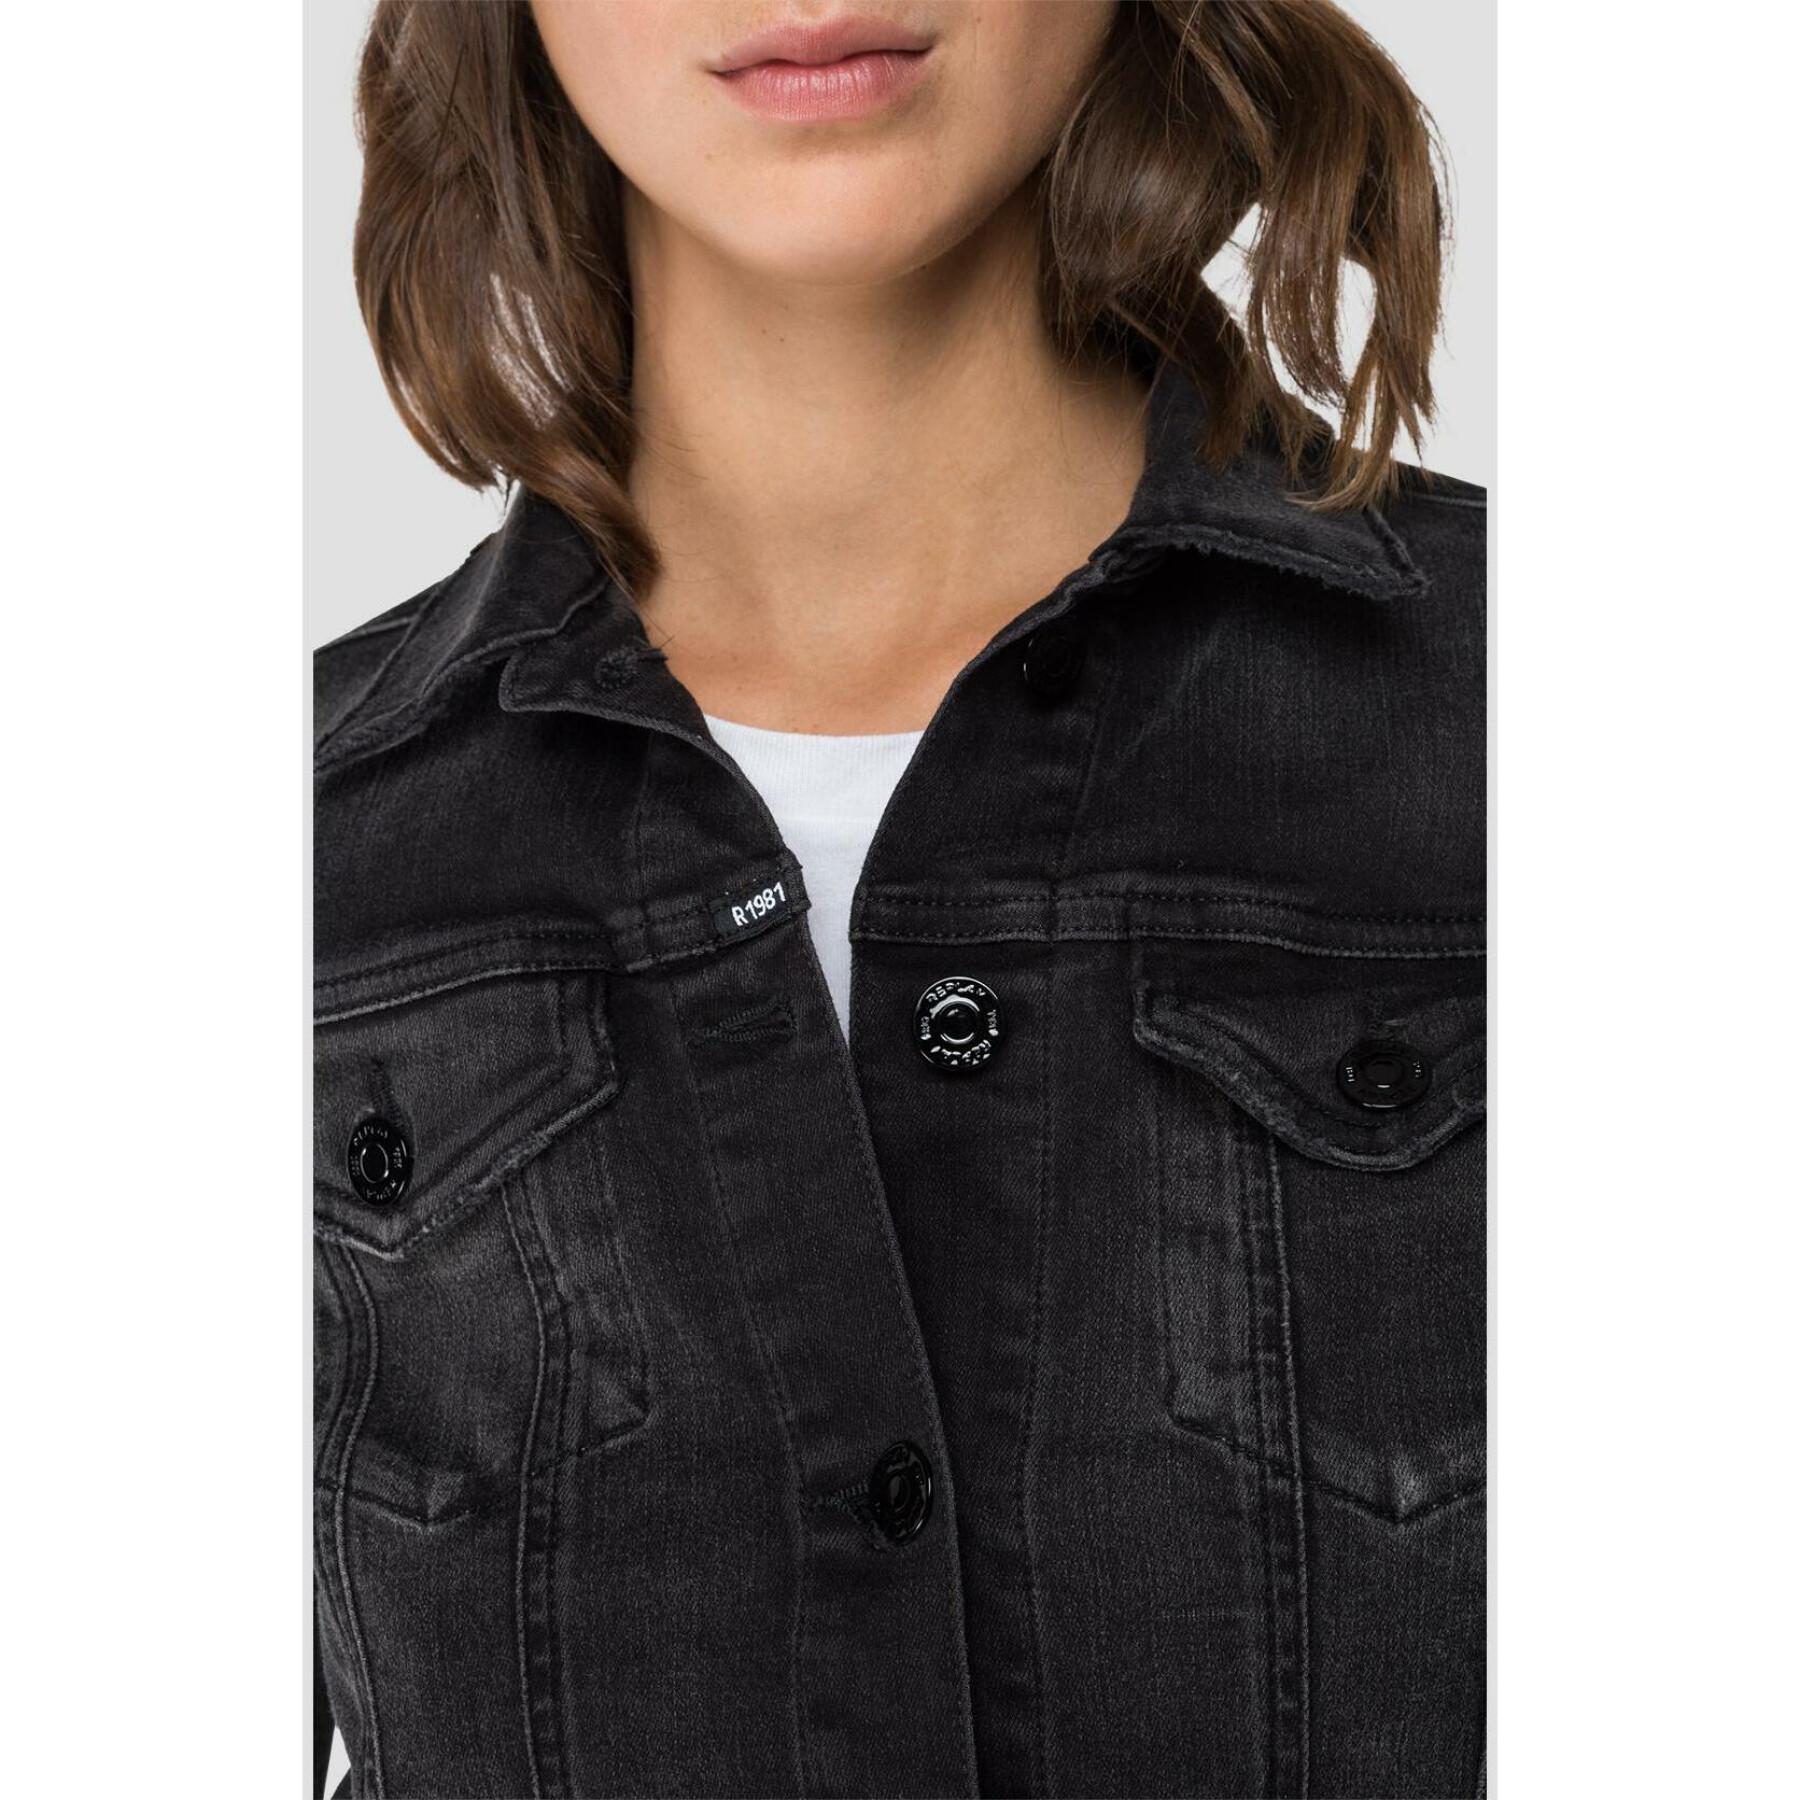 Ekologiczna kurtka jeansowa dla kobiet Replay hyperflex